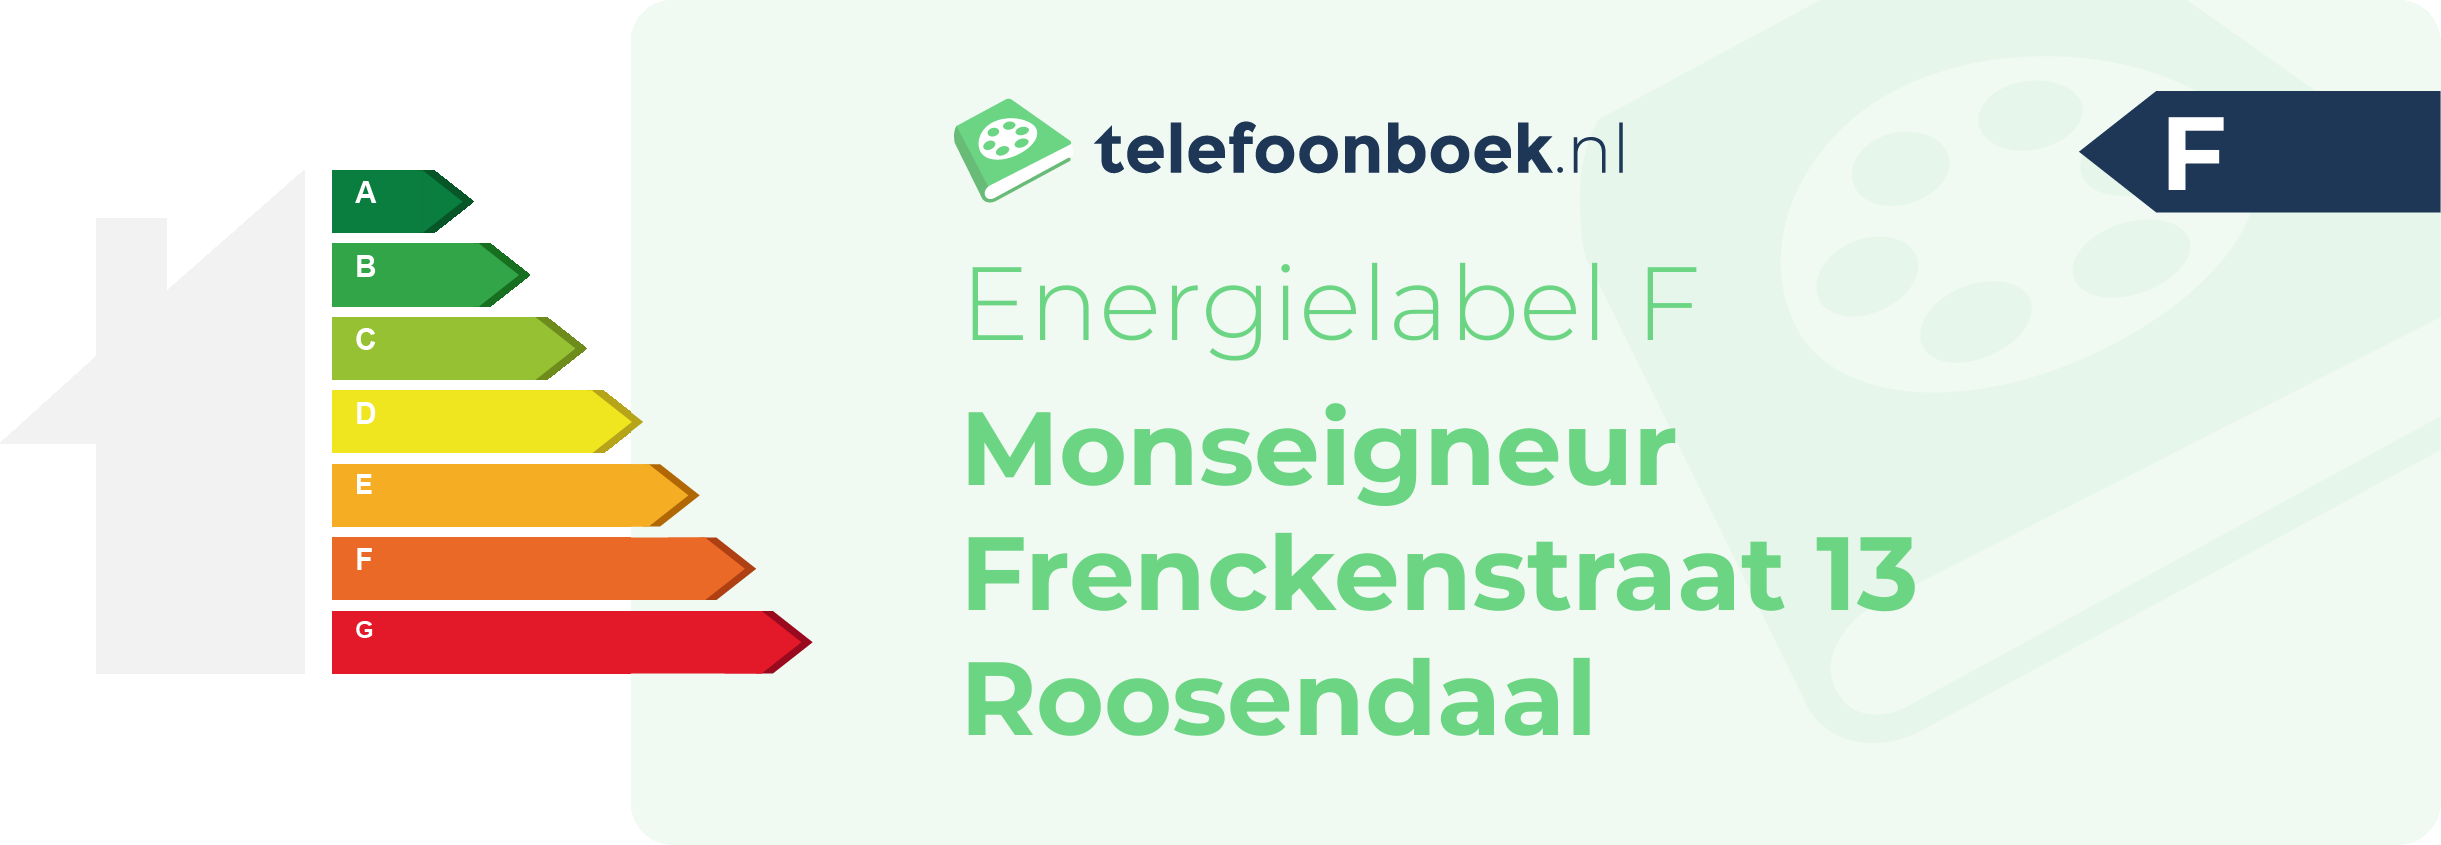 Energielabel Monseigneur Frenckenstraat 13 Roosendaal